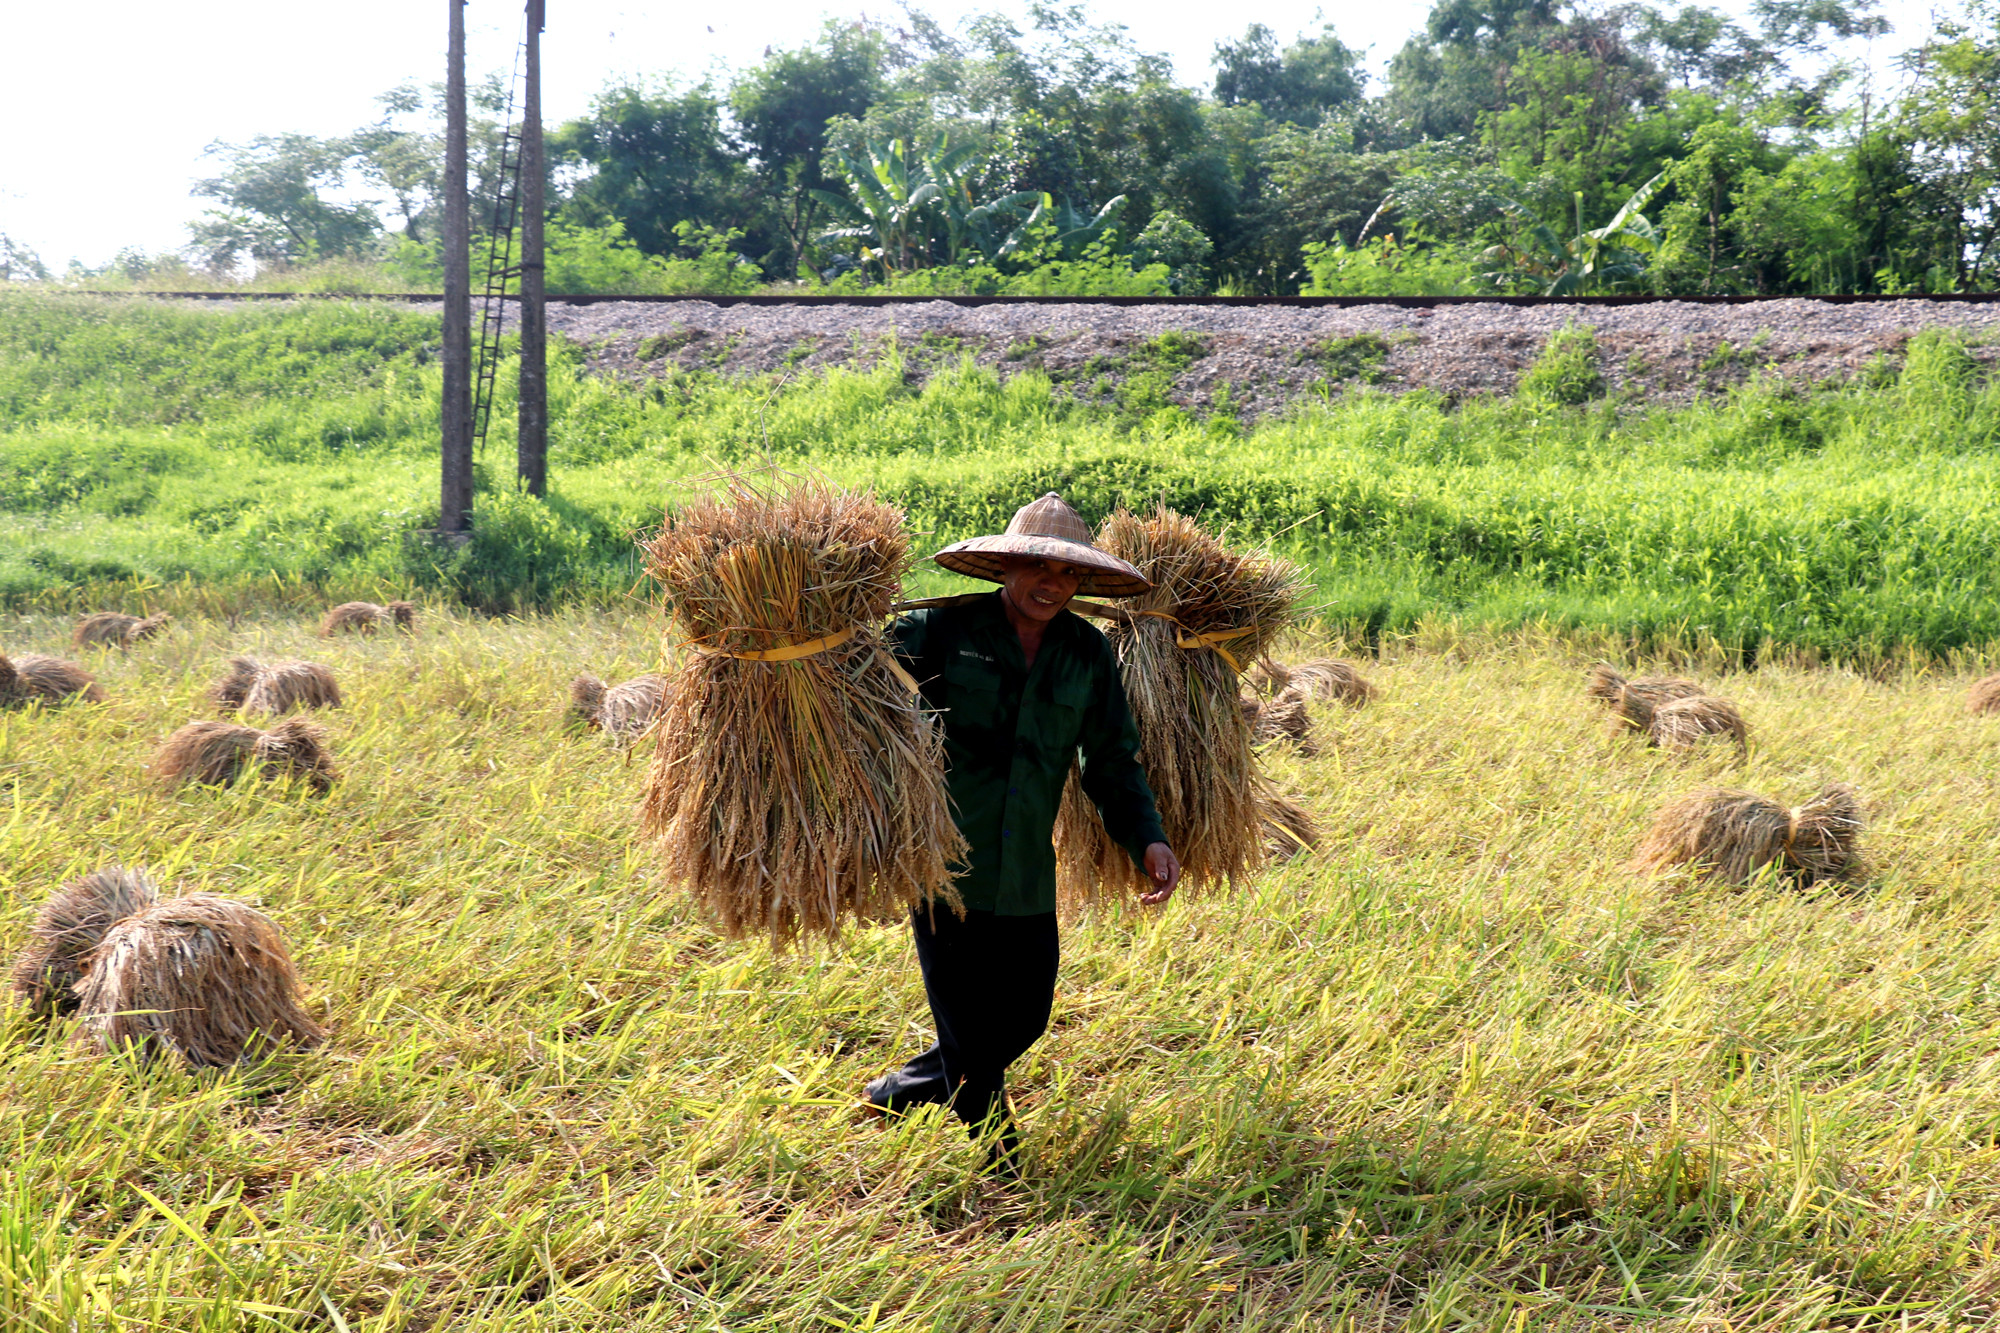 Không thể chờ được máy gặt nên người nông dân này chấp nhận gặt tay và gánh lúa về nhà. Ảnh: Thanh Phúc